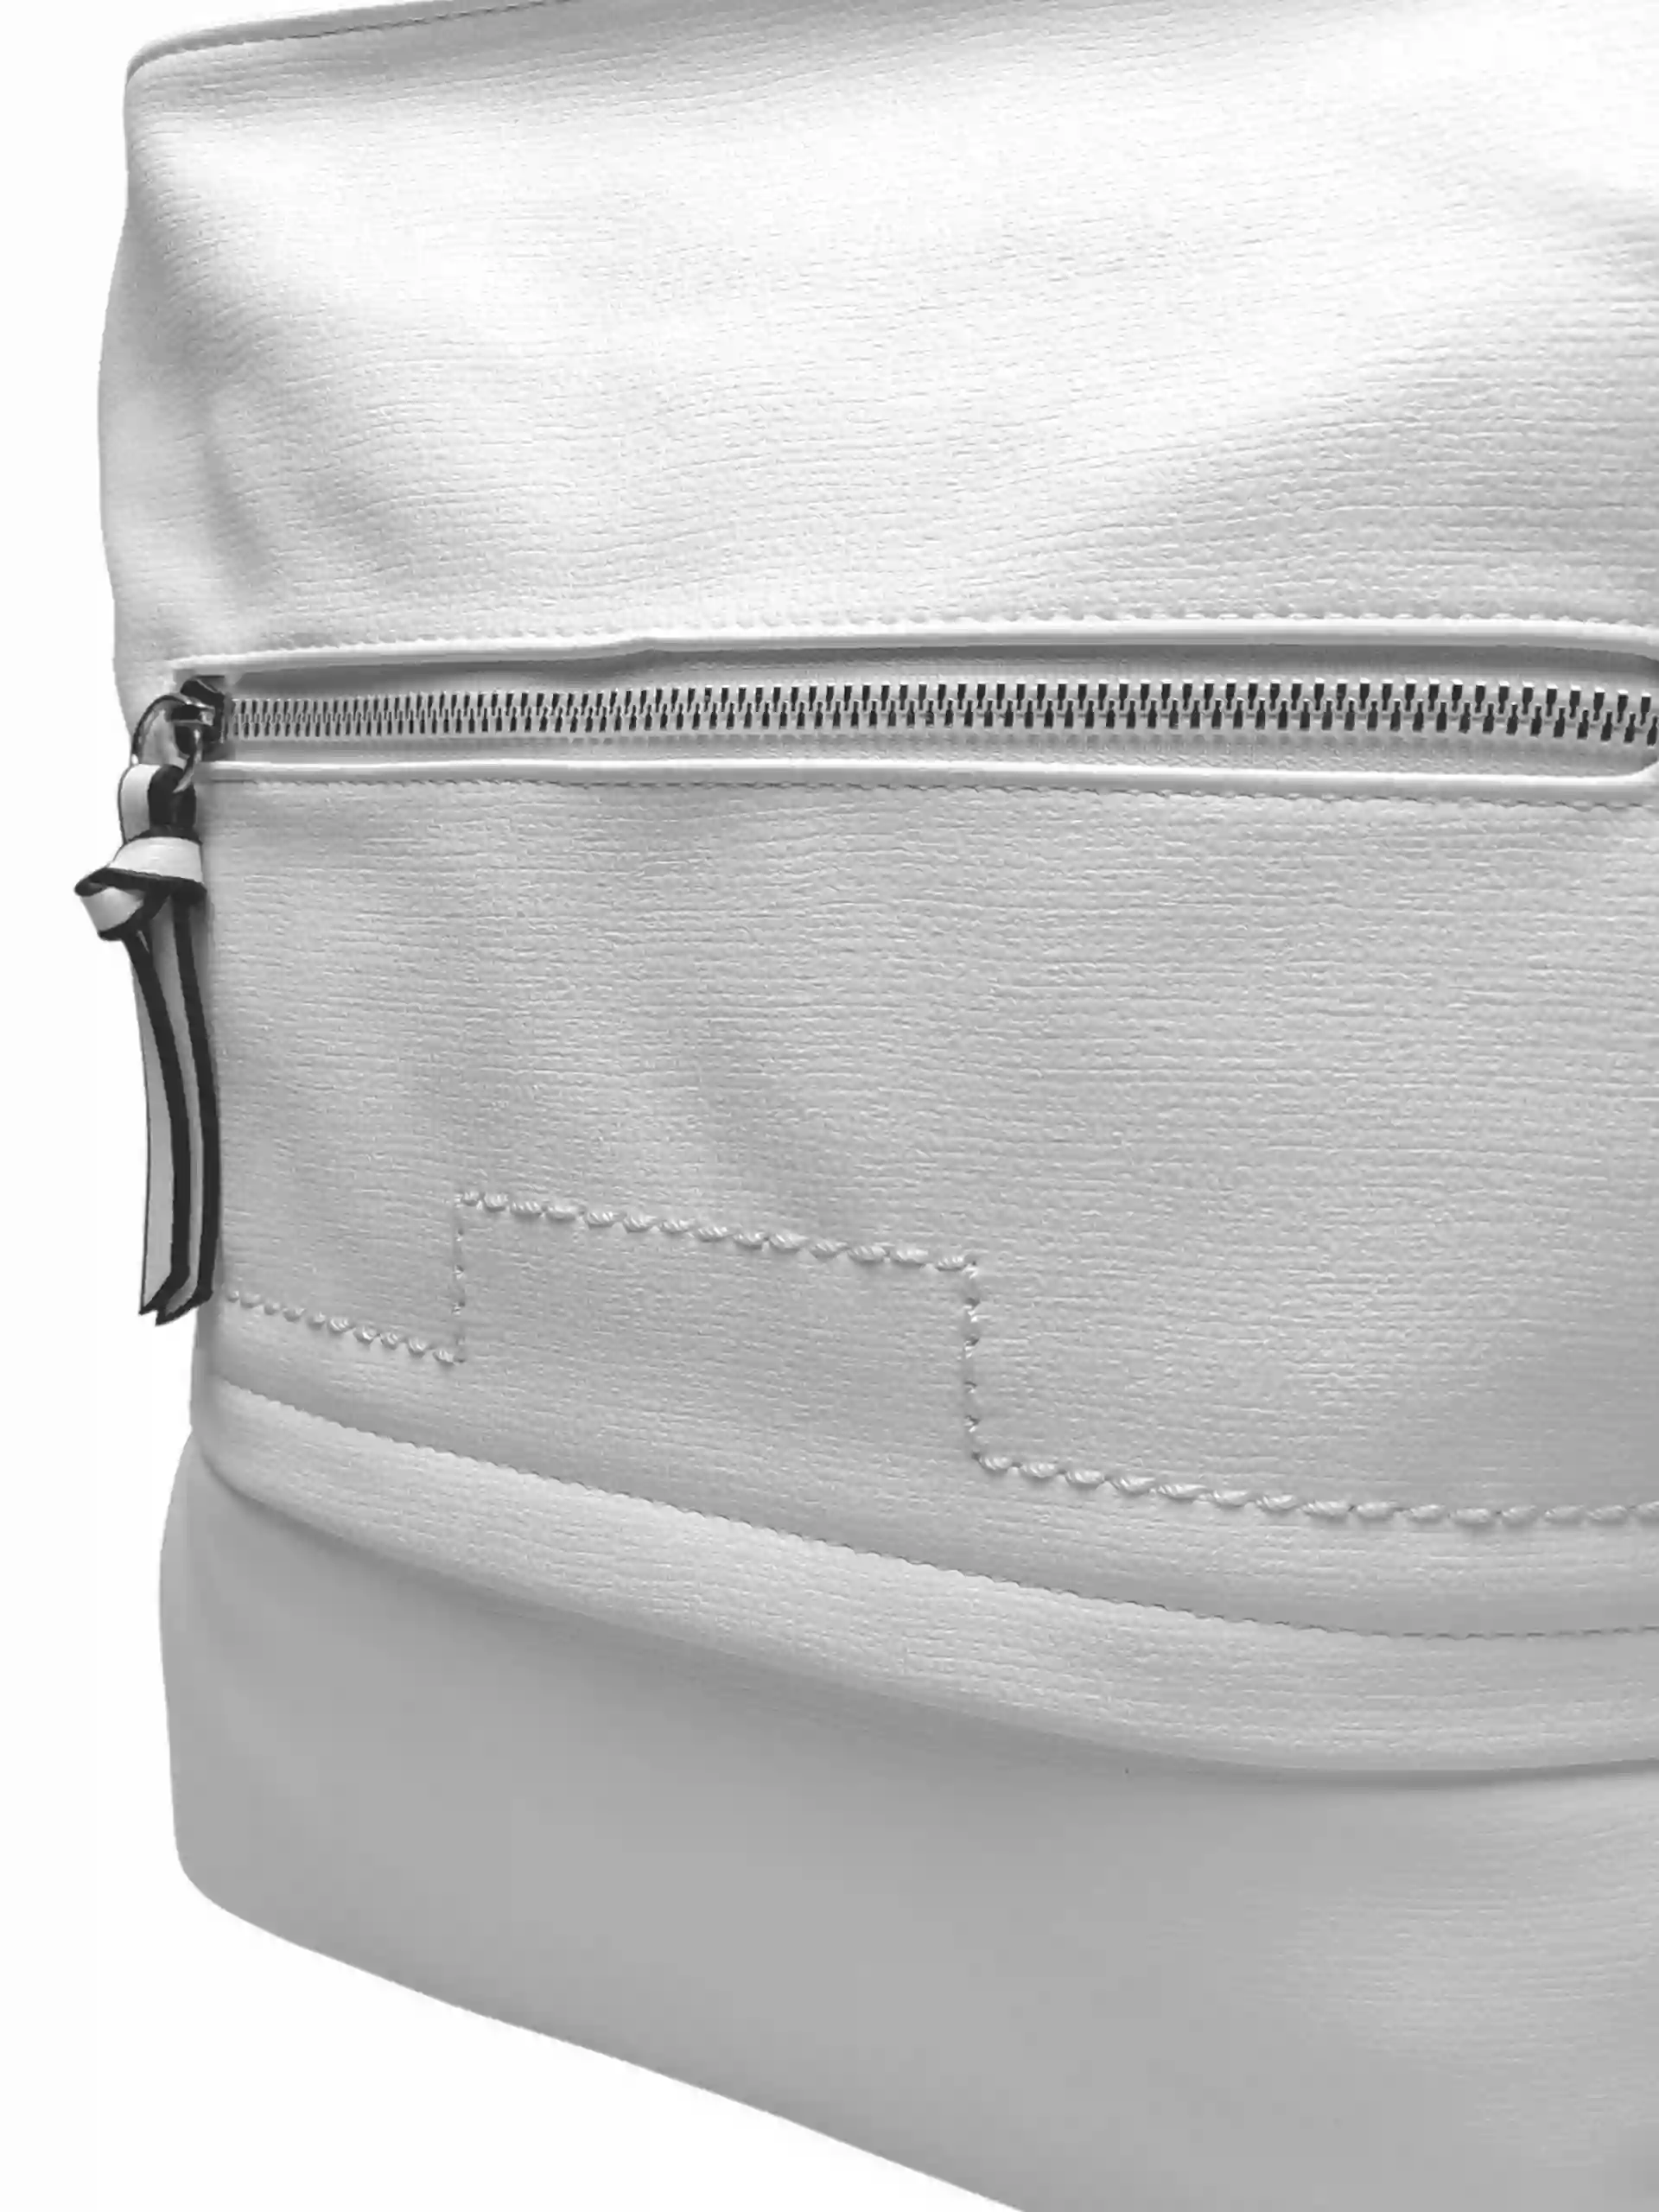 Střední bílý kabelko-batoh 2v1 s praktickou kapsou, Tapple, H190062, detail kabelko-batohu